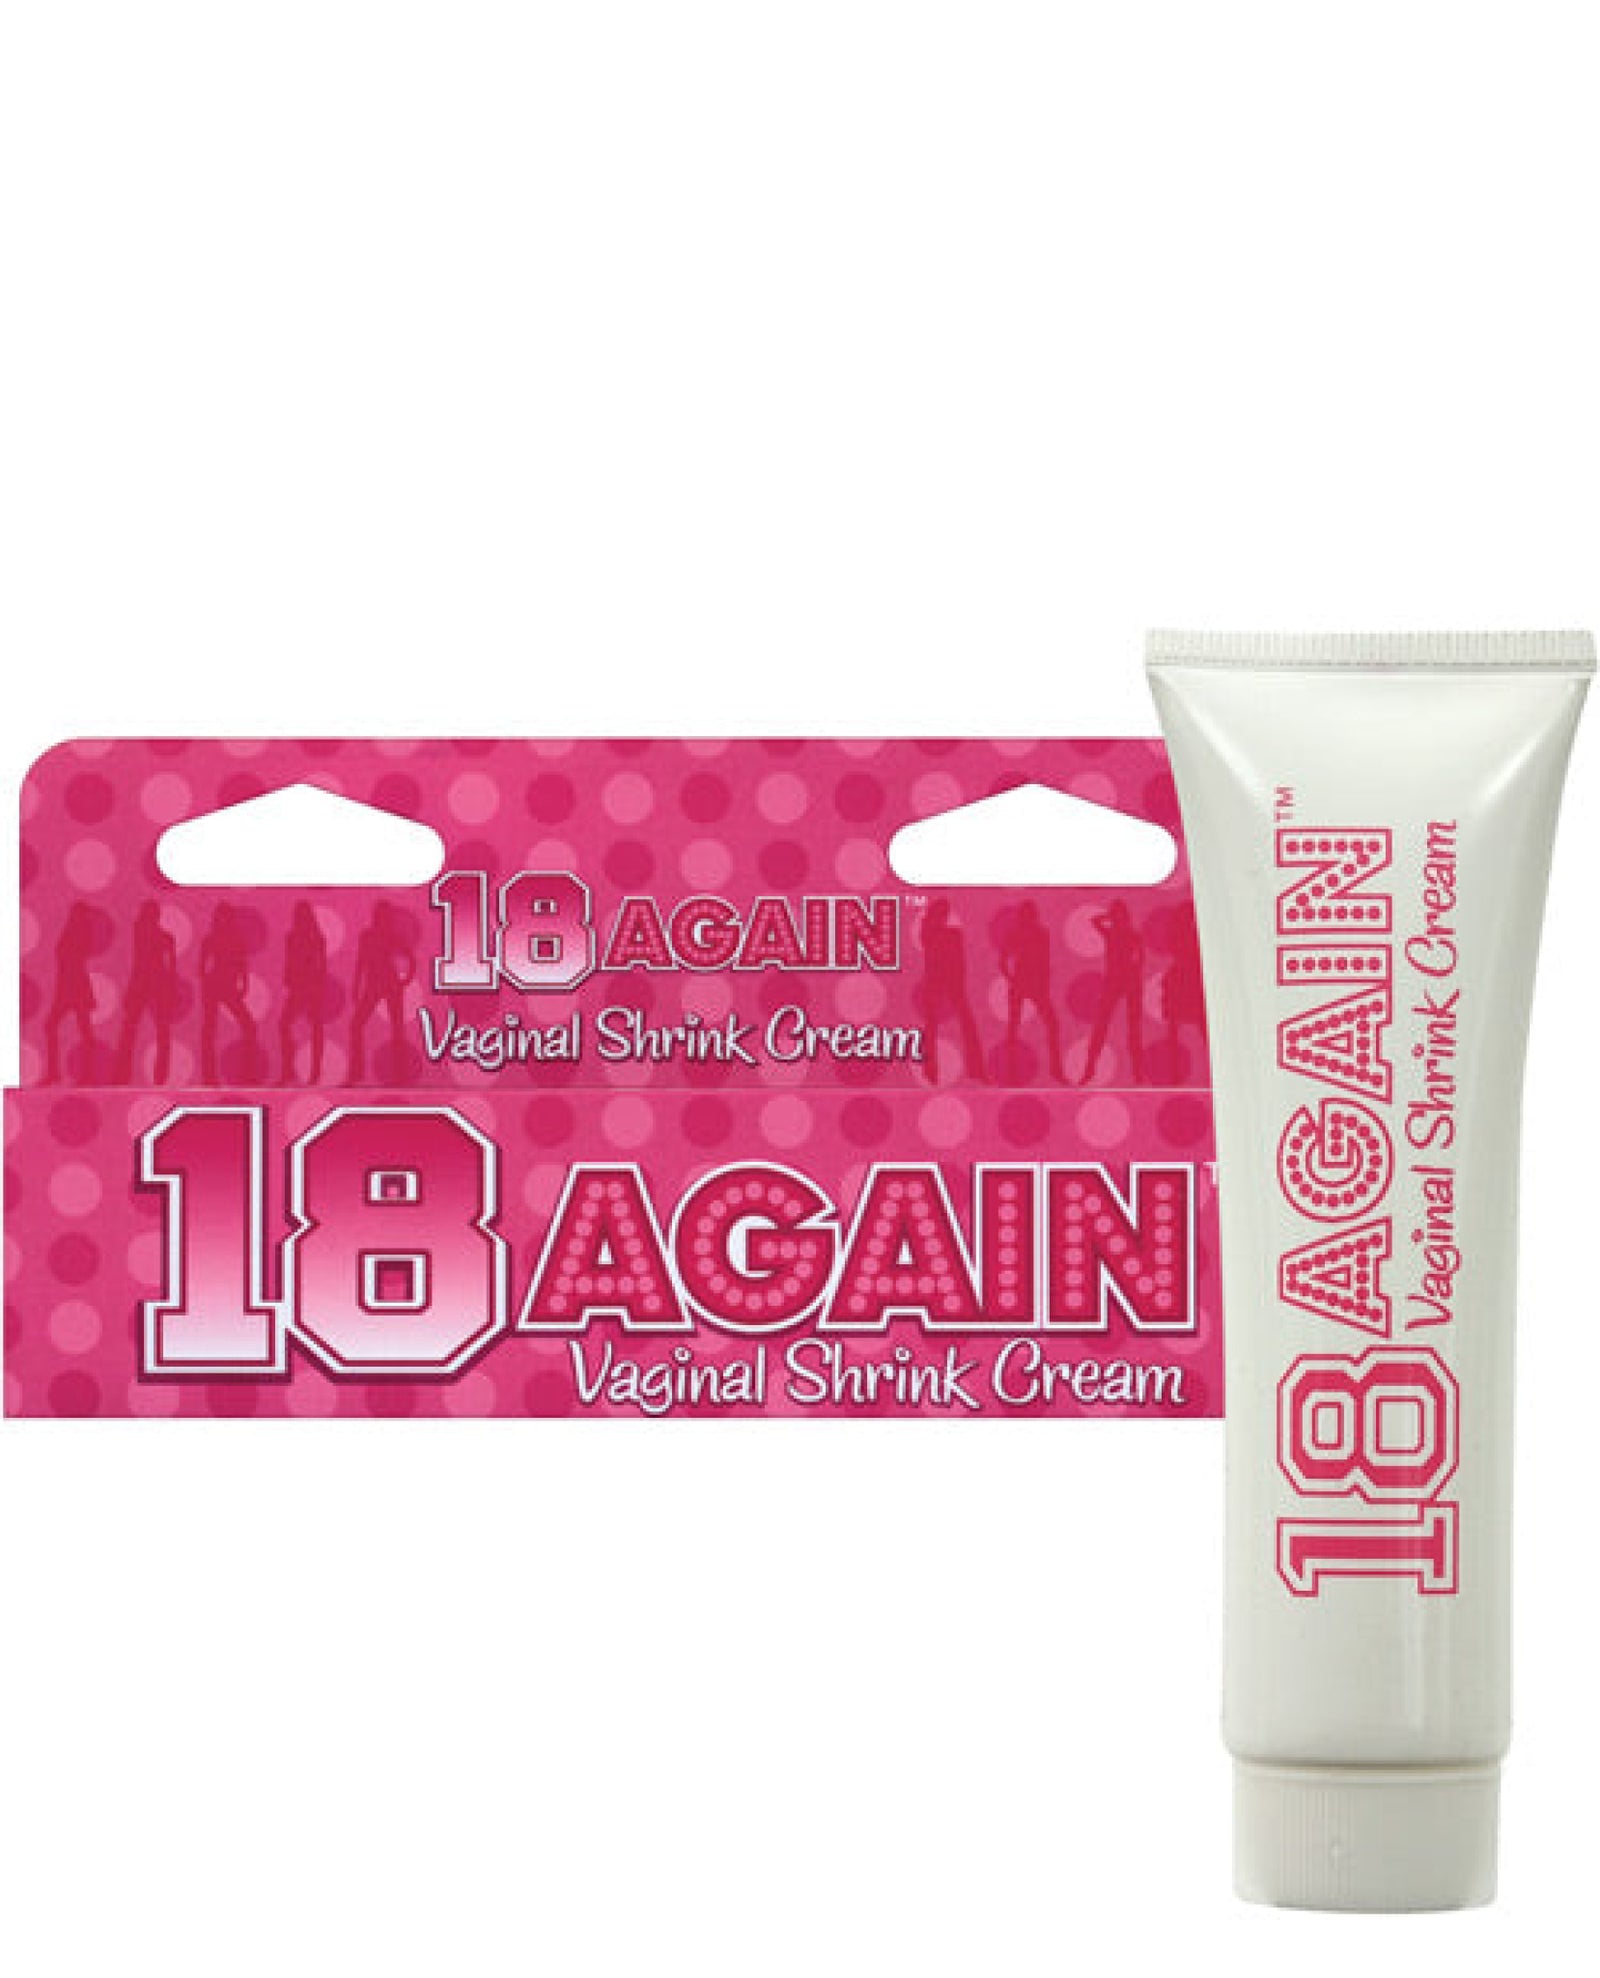 18 Again - Vaginal Shrink Cream Little Genie